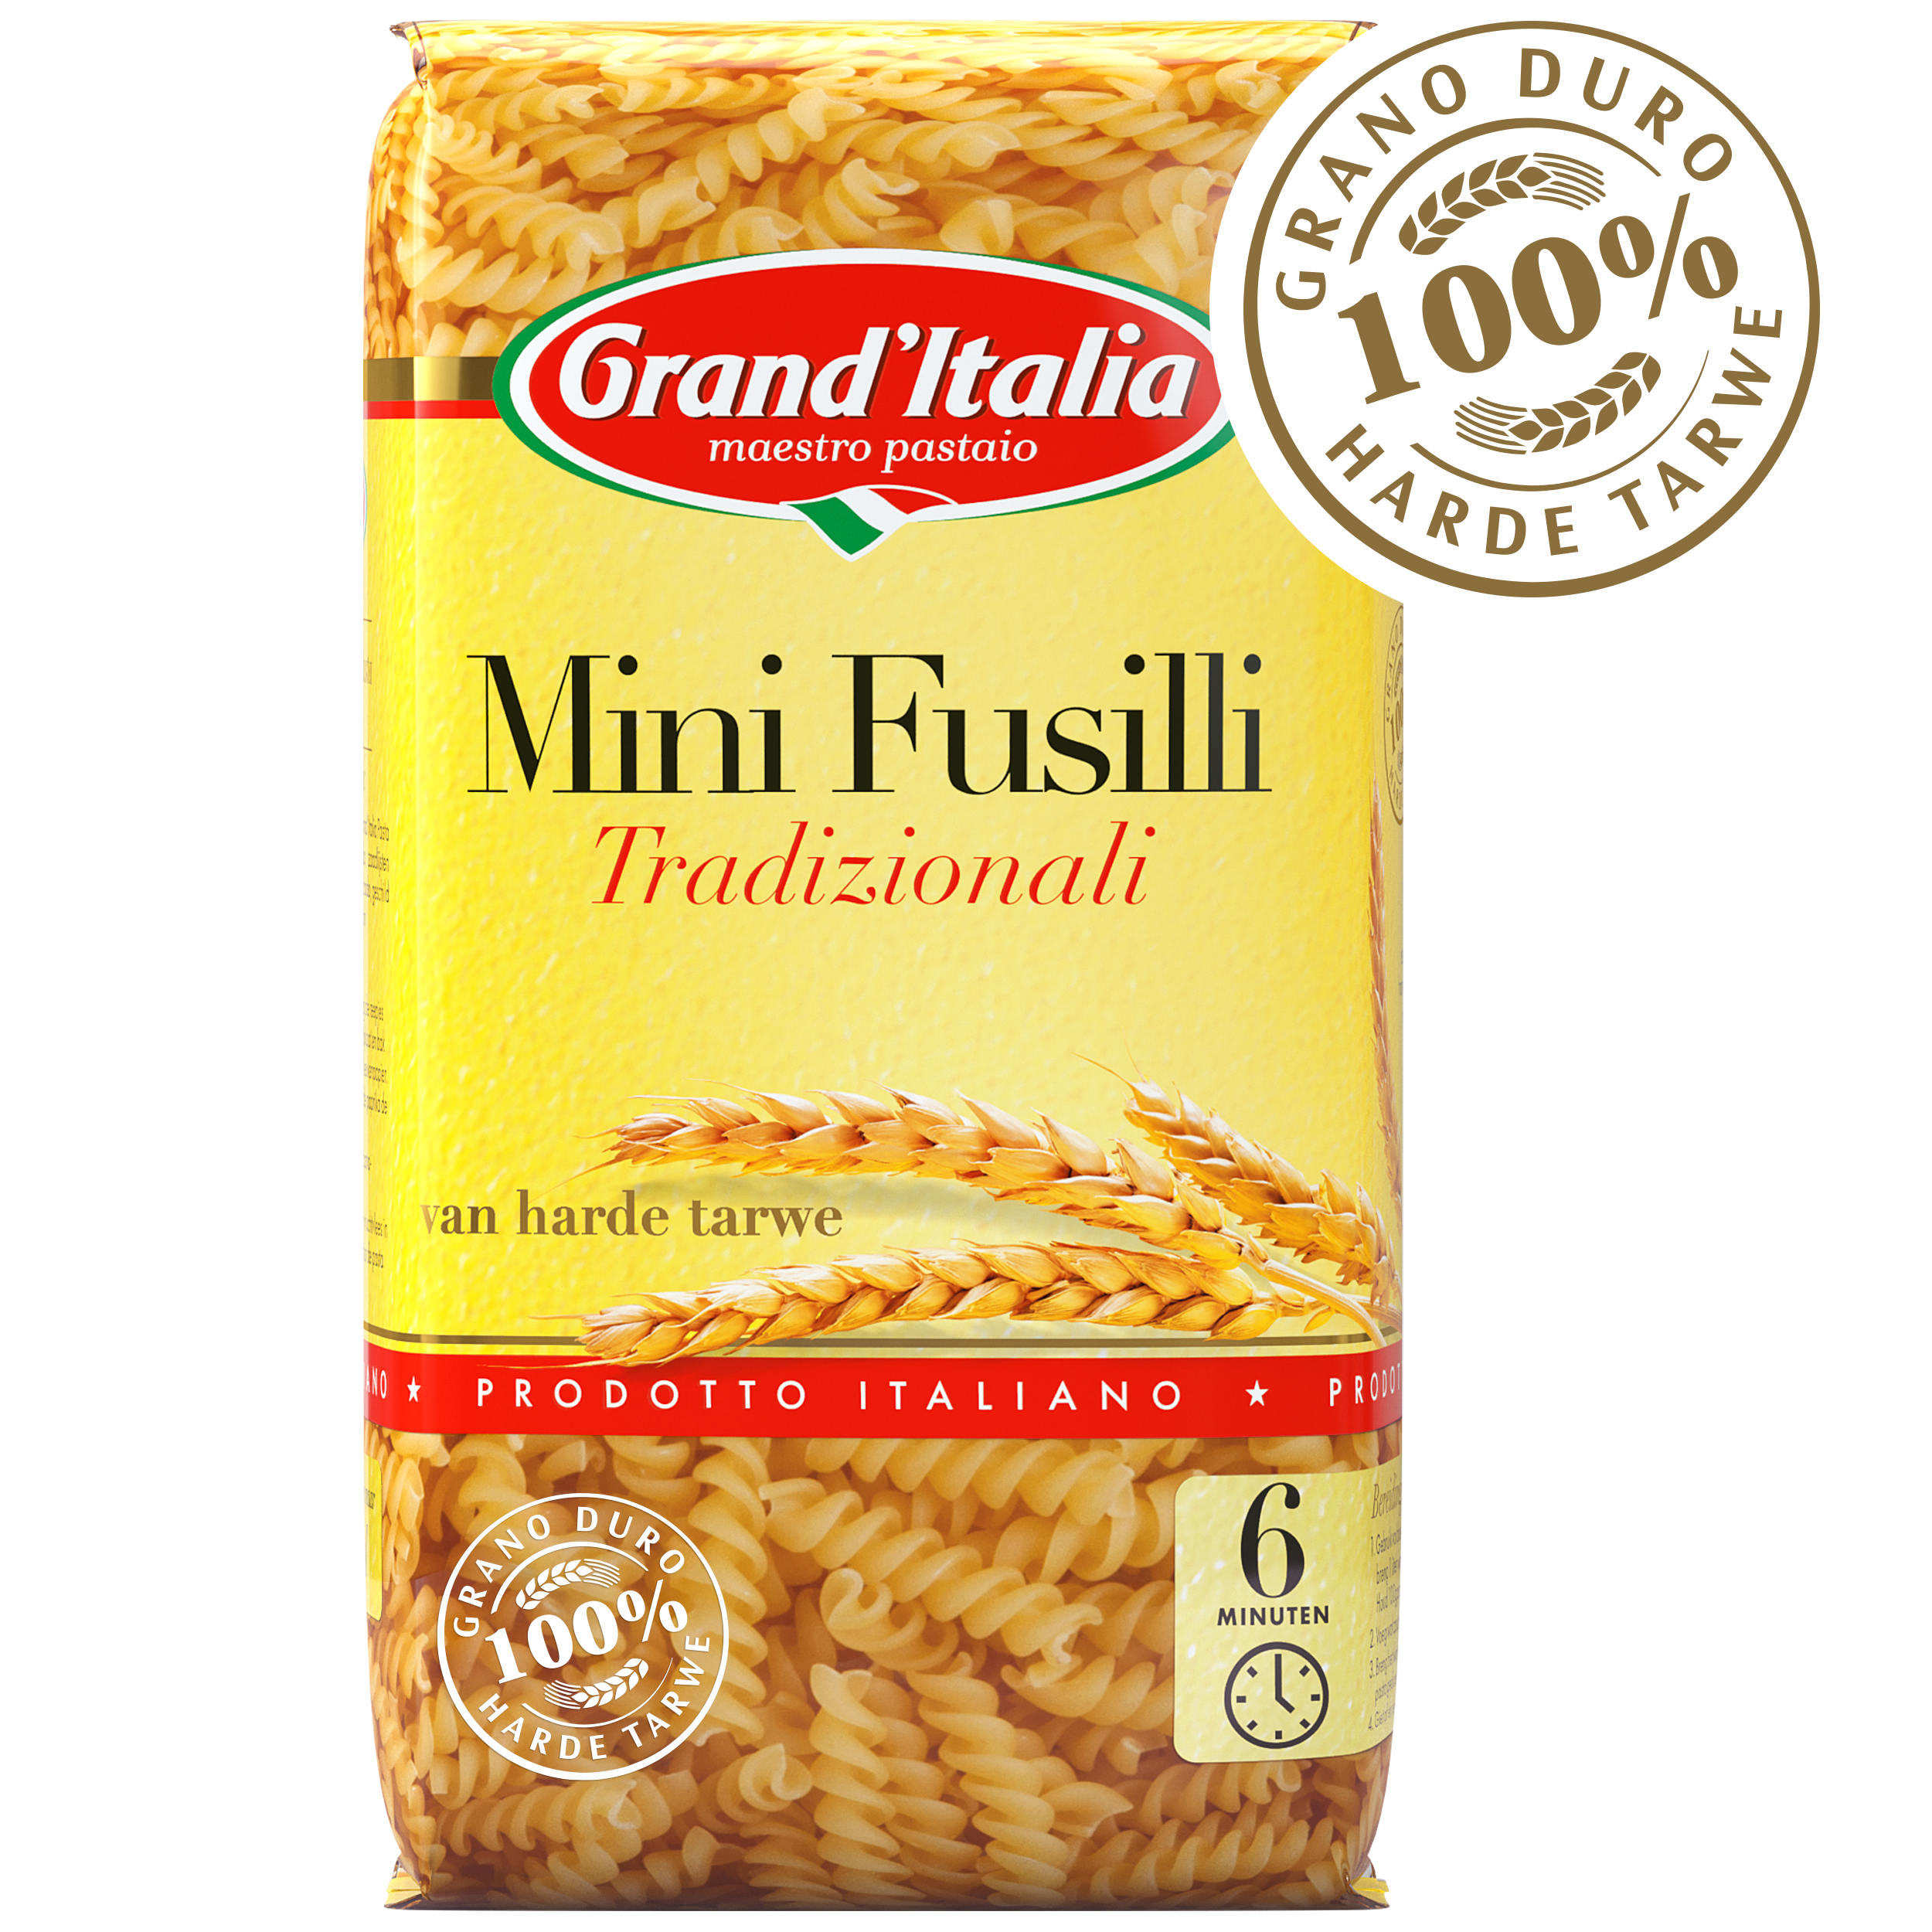 Pasta Mini Fusilli Tradizionali 350g claim Grand'Italia